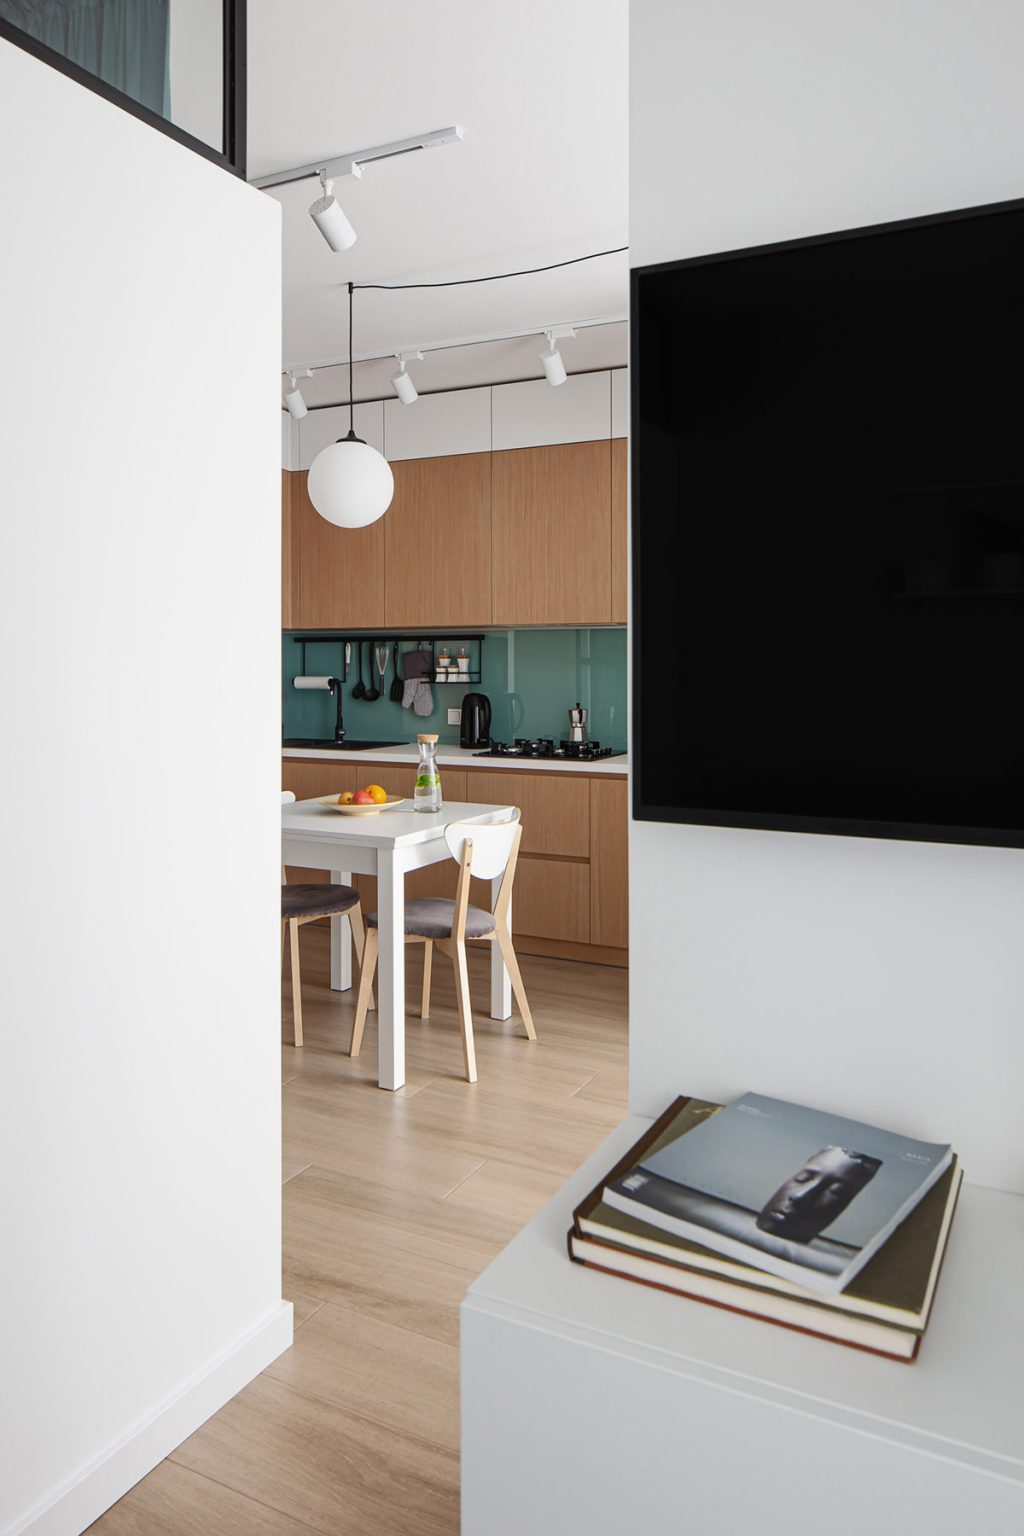 kitchen diner | Interior Design Ideas